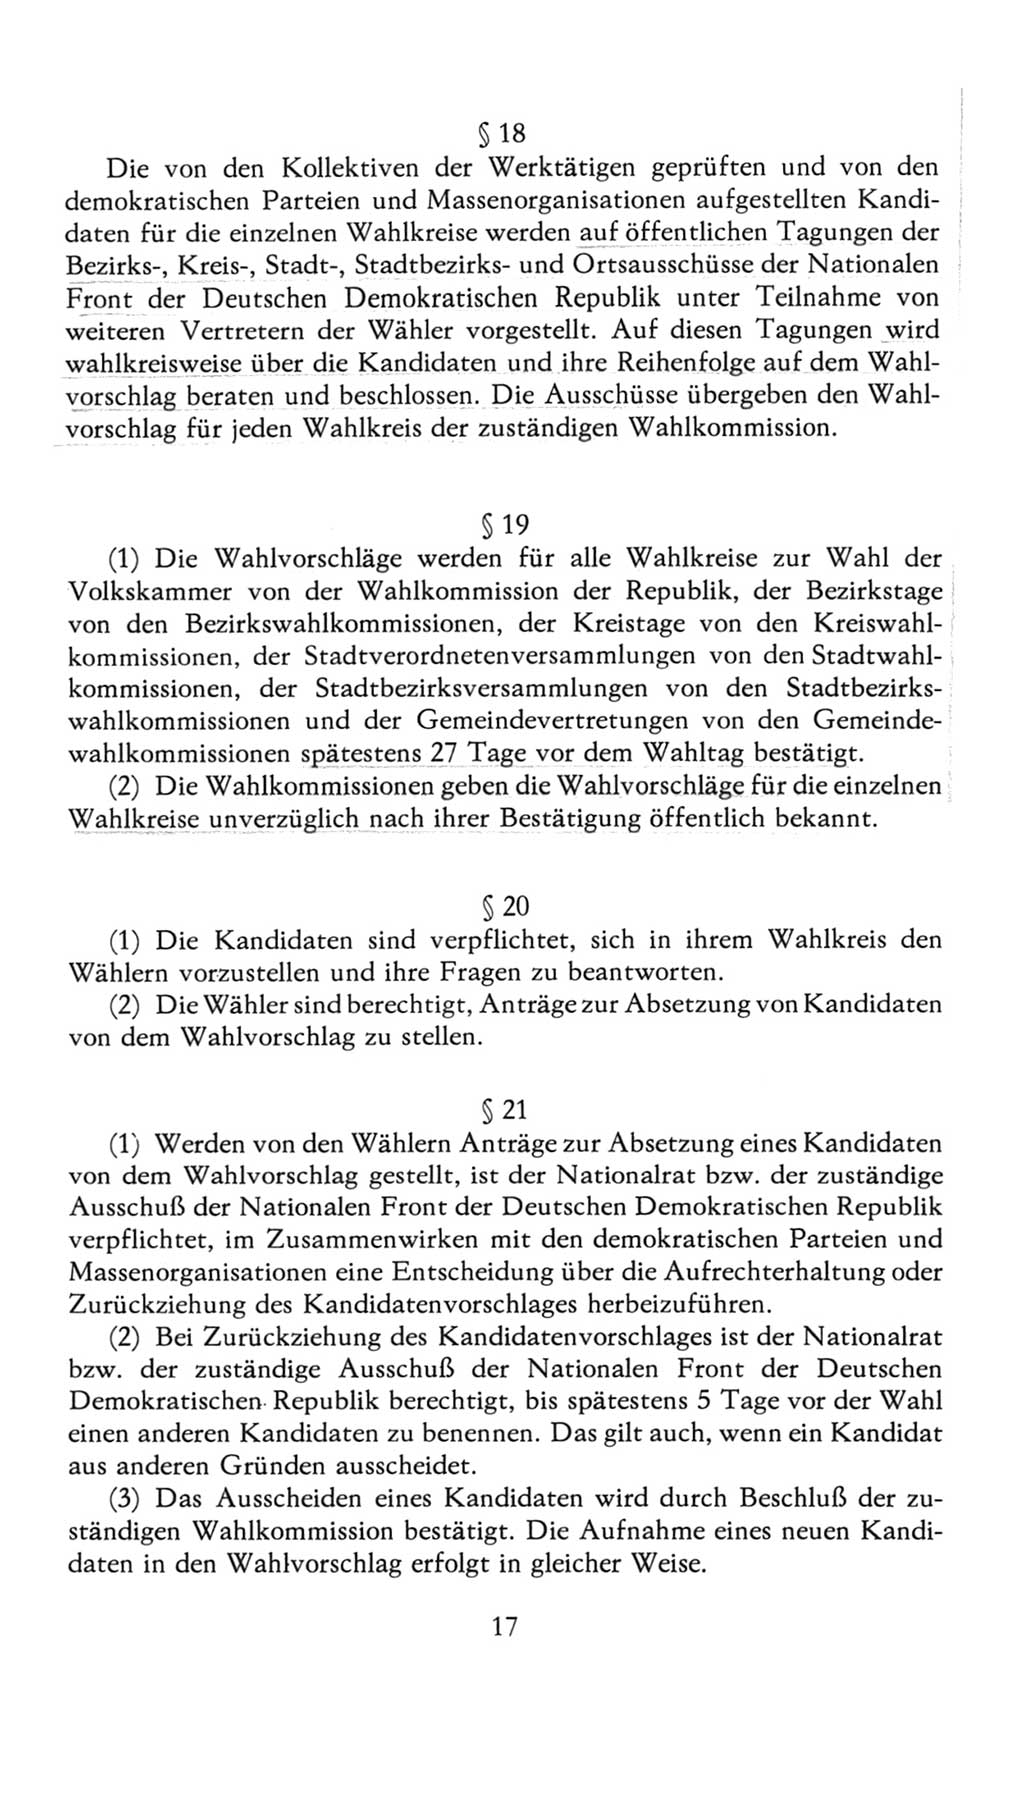 Volkskammer (VK) der Deutschen Demokratischen Republik (DDR), 7. Wahlperiode 1976-1981, Seite 17 (VK. DDR 7. WP. 1976-1981, S. 17)